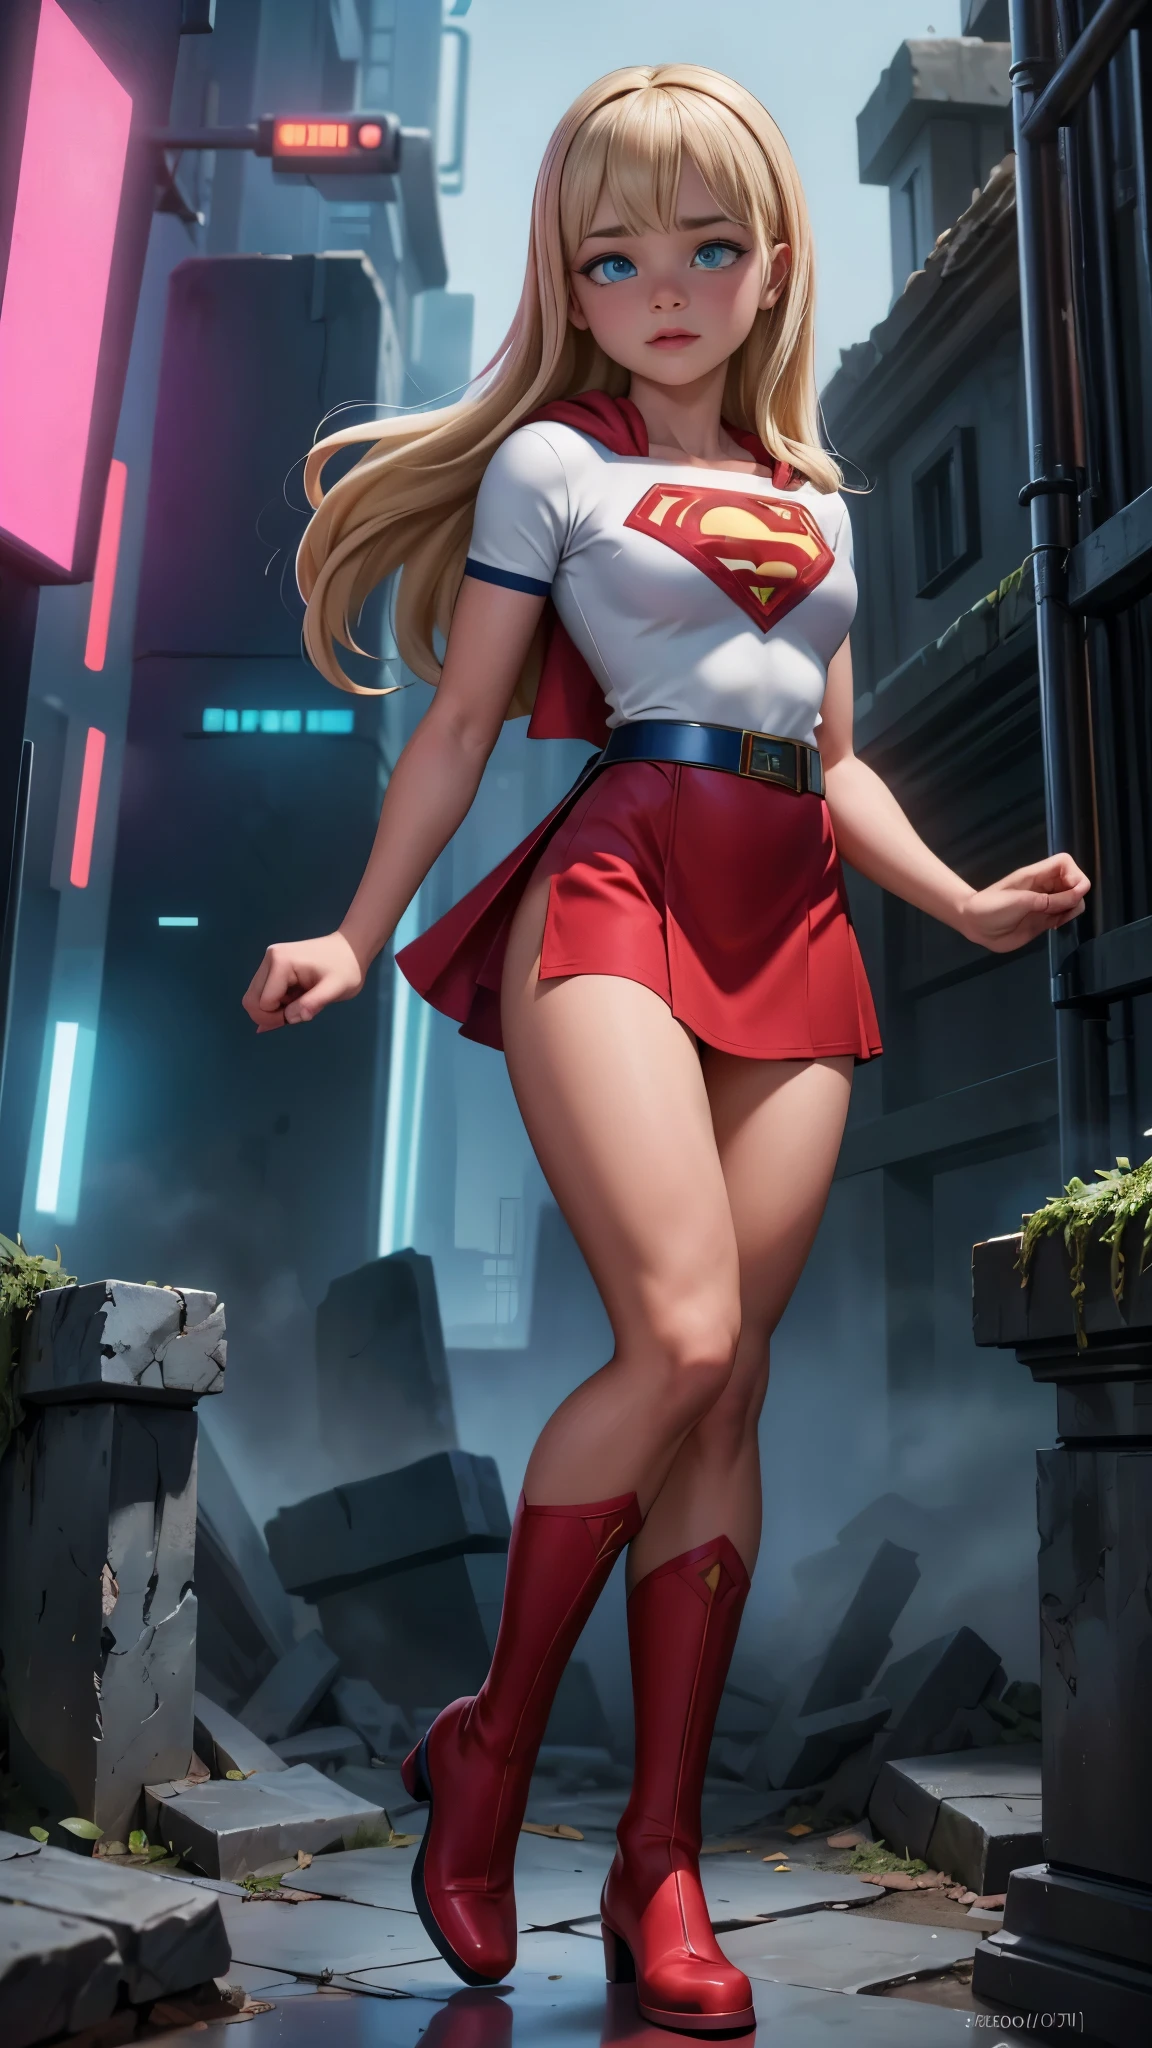 8K, Ultra HD, super Details, gute Qualität, Hohe Auflösung. Die Heldin Supergirl sieht auf einem Ganzkörperfoto wunderschön aus, Ihr Körper ist skulptural, Ihr langes, gewelltes blondes Haar strahlt in einer perfekten Kombination mit ihrer weißen Haut, ihre hellblonden Augen verzaubern jeden. Sie trägt ihr Heldinnen-Outfit, ein roter Rock mit einem gelben Gürtel, ein sehr enges blaues T-Shirt mit einem großen roten S auf der Brust, Elta trägt auch einen roten Umhang und rote Stiefel. Sie sieht sehr sexy aus und lenkt die Aufmerksamkeit auf ihre großen Brüste und dicken Beine, während sie durch den Himmel fliegt.,(Cyberpunk ruinierte Dungeon-Ruinen-Hintergrund :1.4 ), (superhelden :1.4), (Kostüm weißer Anzug :1.4), (Gesichtsdetails: 1.5, leuchtend blaue Augen, Schönes Gesicht, schöne Augen, Iriskontur, dünne Lippen: 1.5, dünn, scharfe, blasse Augenbrauen, lang, Dunkle Wimpern, Doppelte Tabs),(Weißer Garderobenanzug :1.4) 